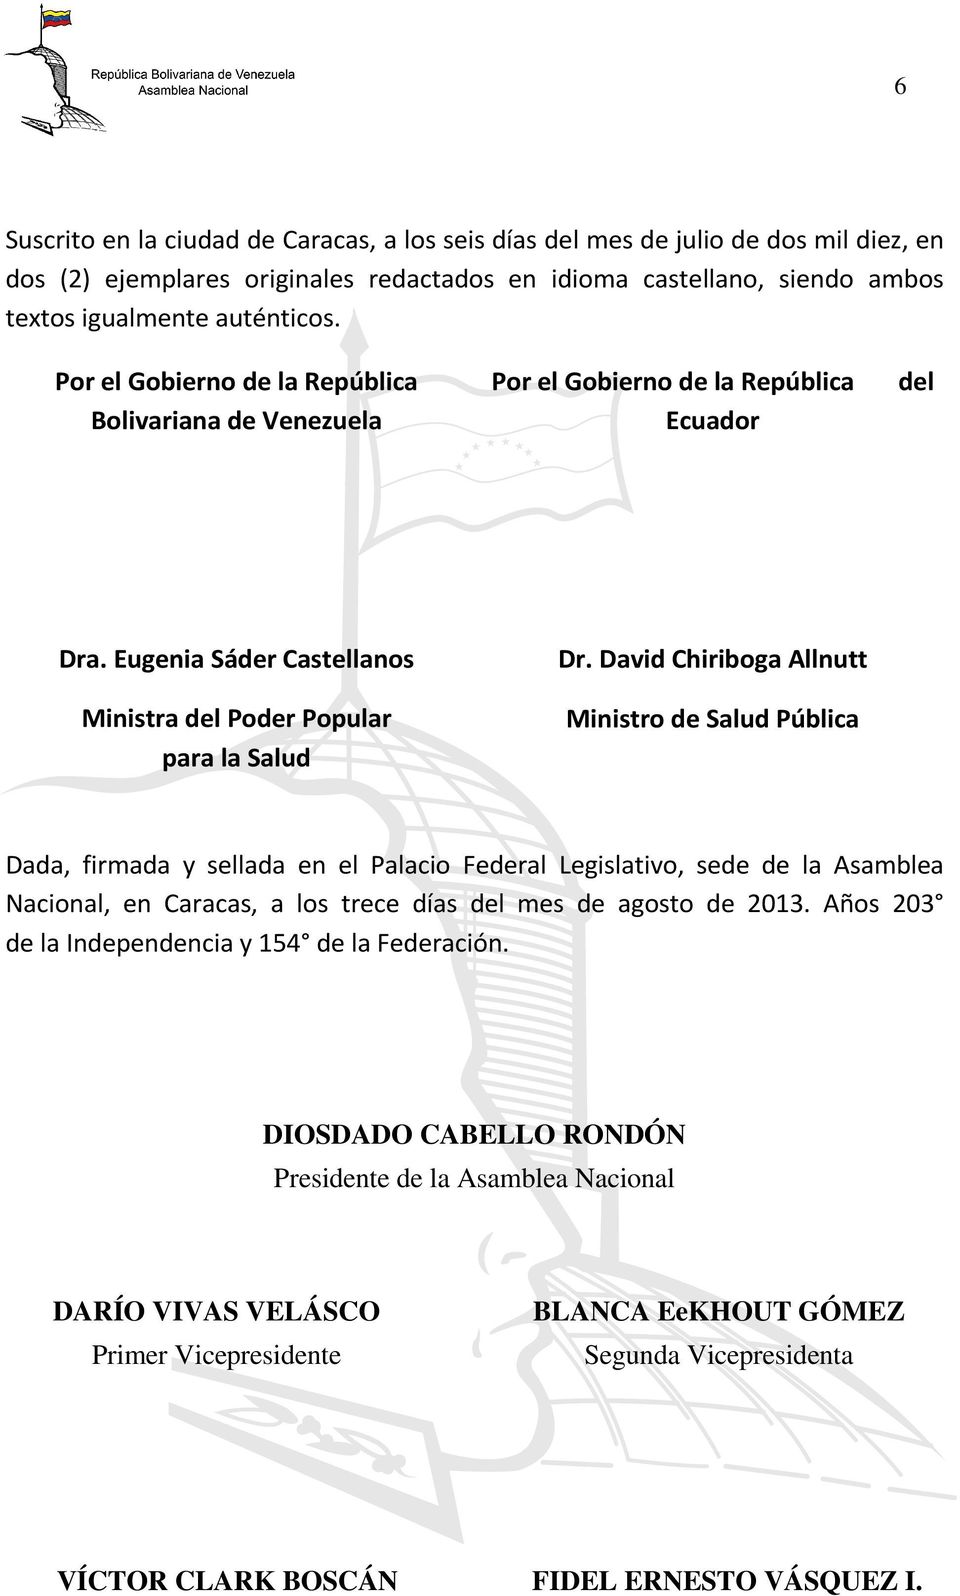 David Chiriboga Allnutt Ministro de Salud Pública Dada, firmada y sellada en el Palacio Federal Legislativo, sede de la Asamblea Nacional, en Caracas, a los trece días del mes de agosto de 2013.